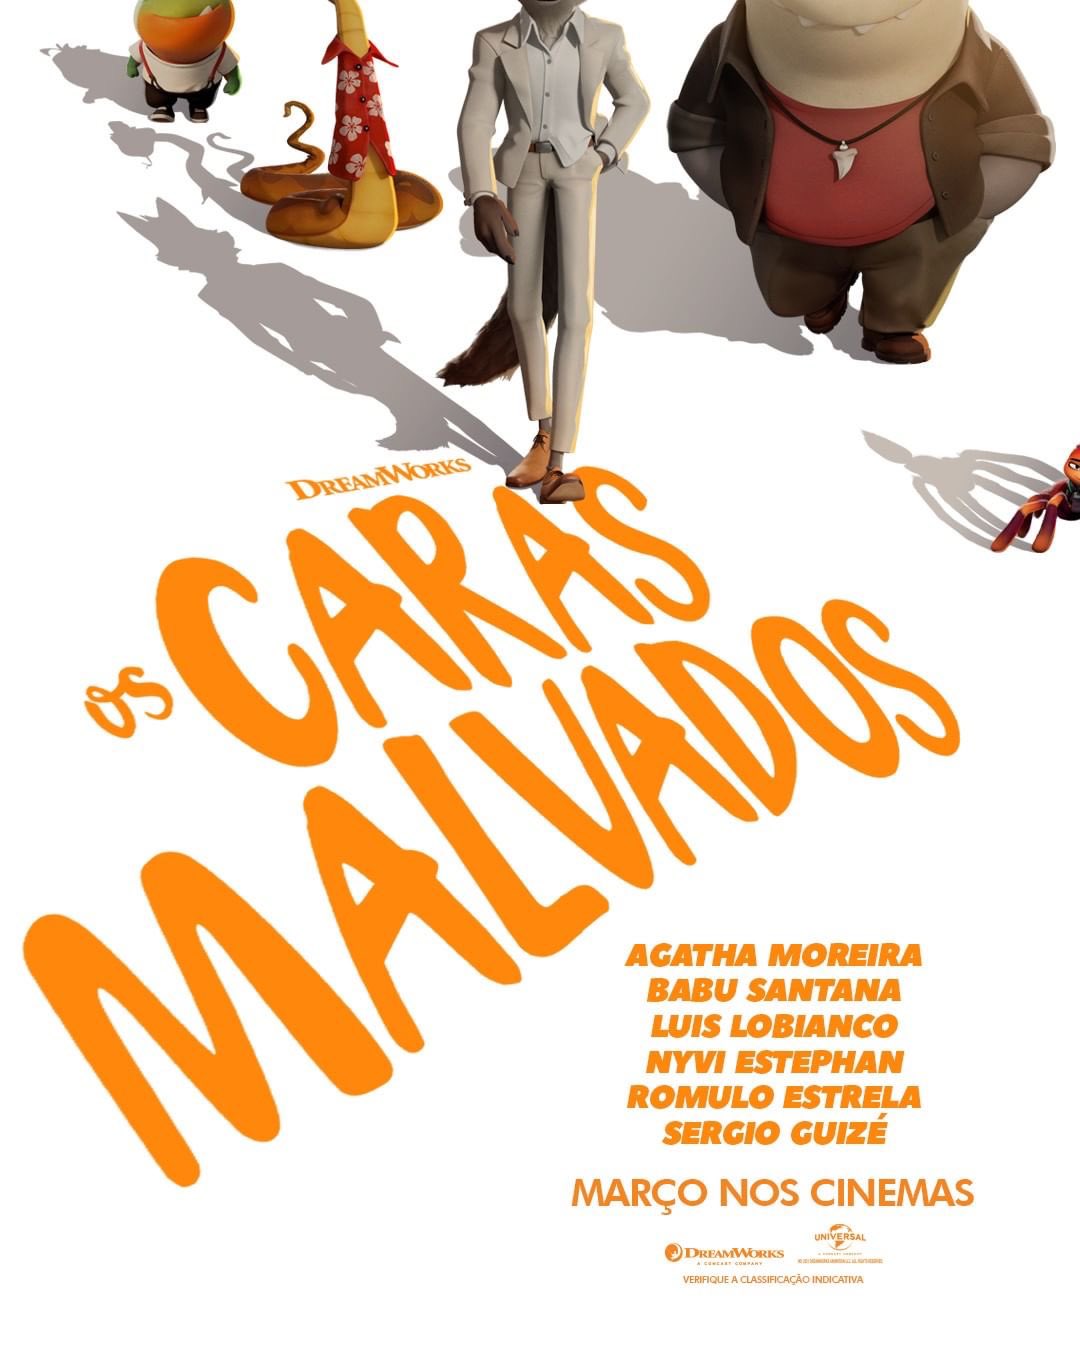 Os Caras Malvados | Animação da DreamWorks Animation baseada na série de livros best-sellers do New York Time